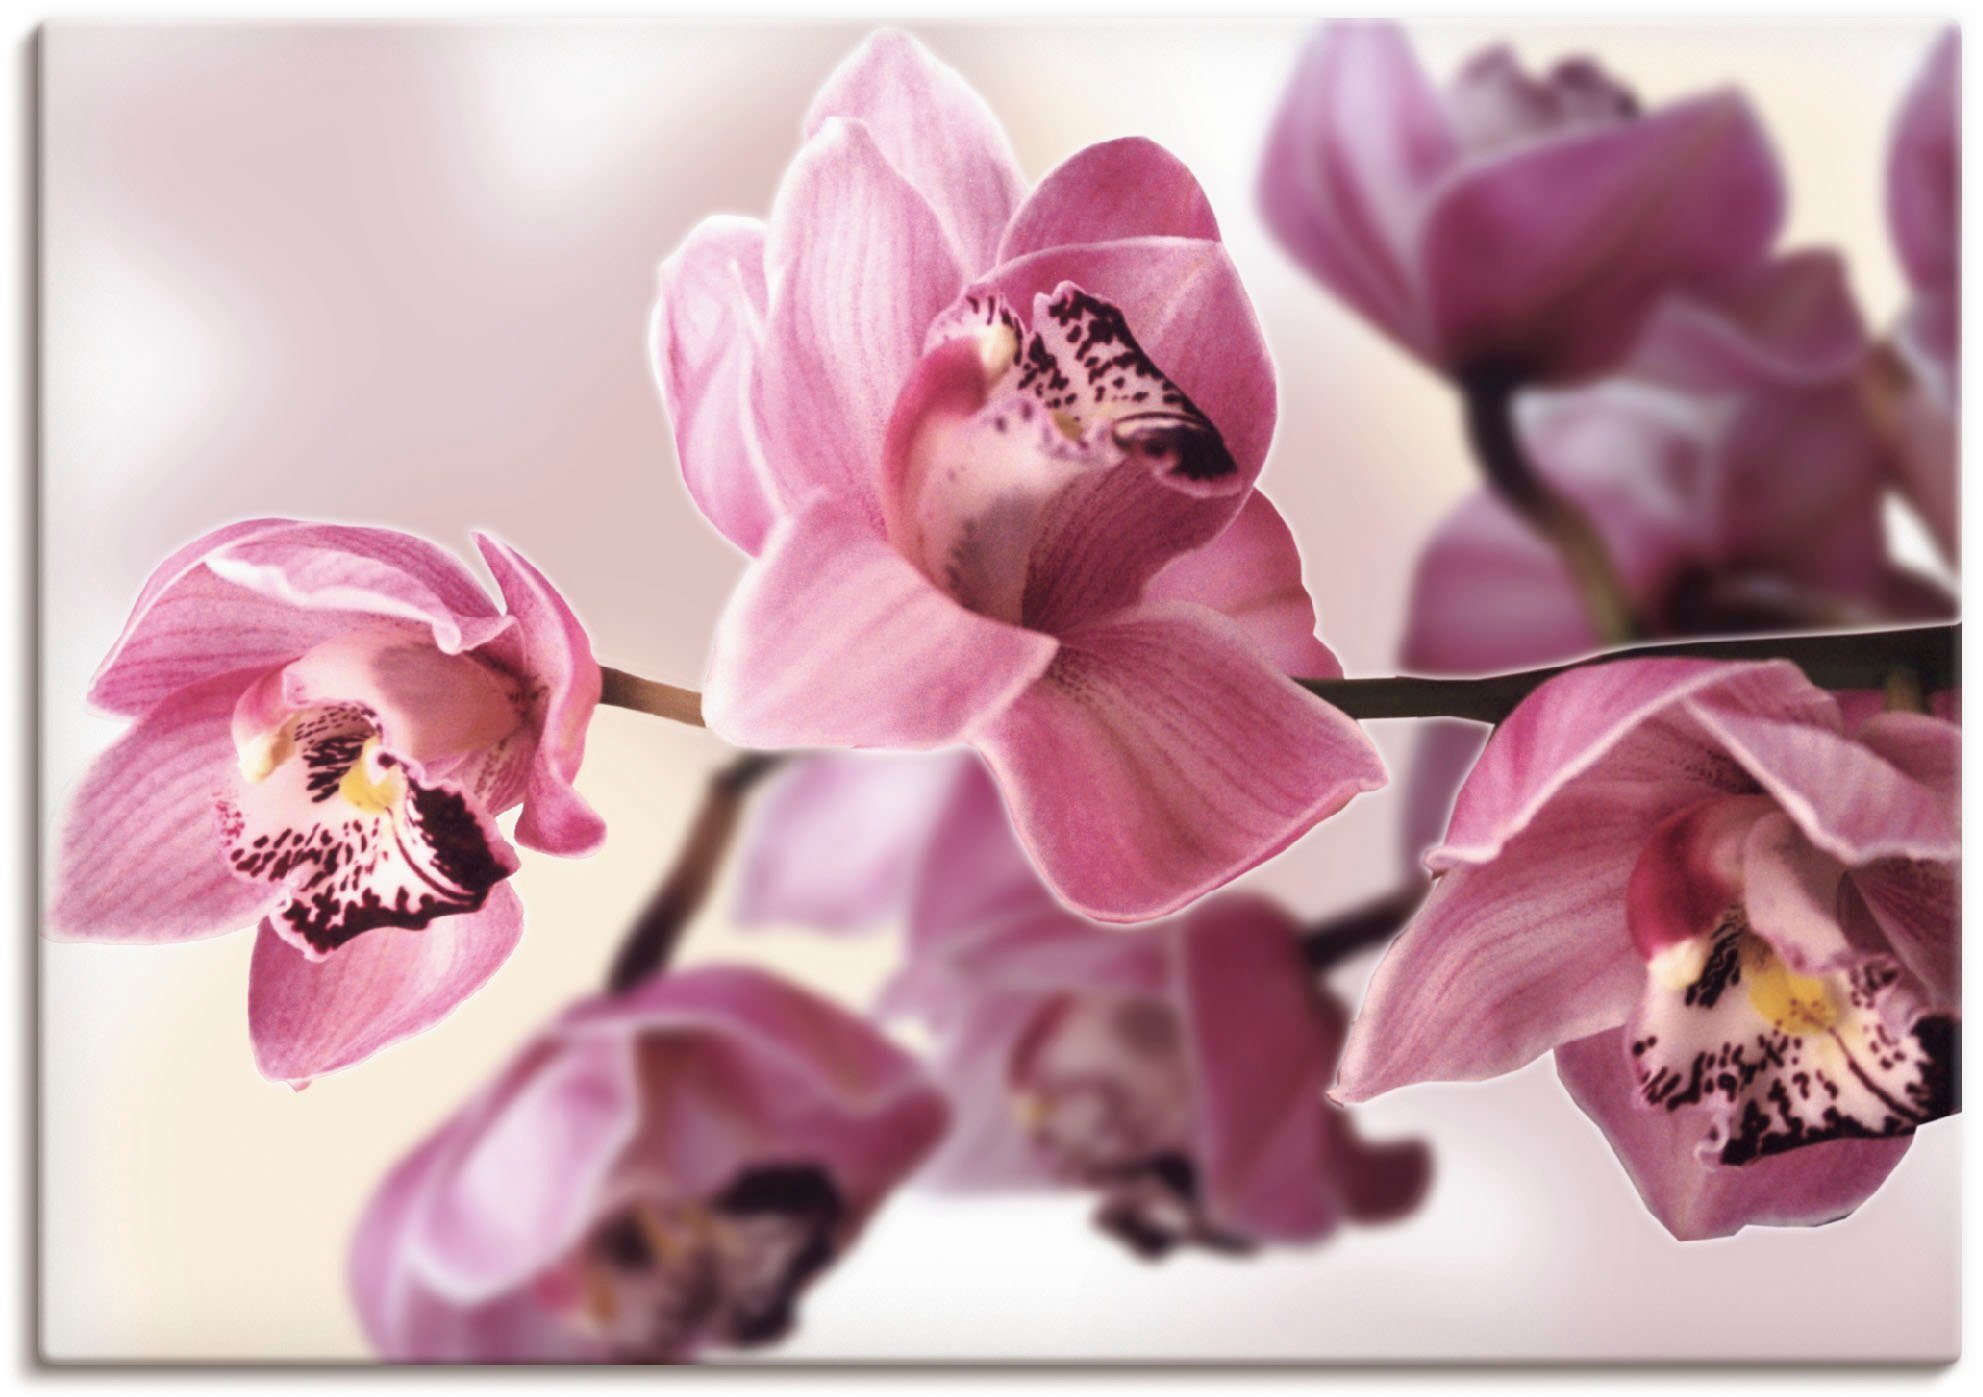 Artland Artprint Roze orchidee in vele afmetingen & productsoorten - artprint van aluminium / artprint voor buiten, artprint op linnen, poster, muursticker / wandfolie ook geschikt